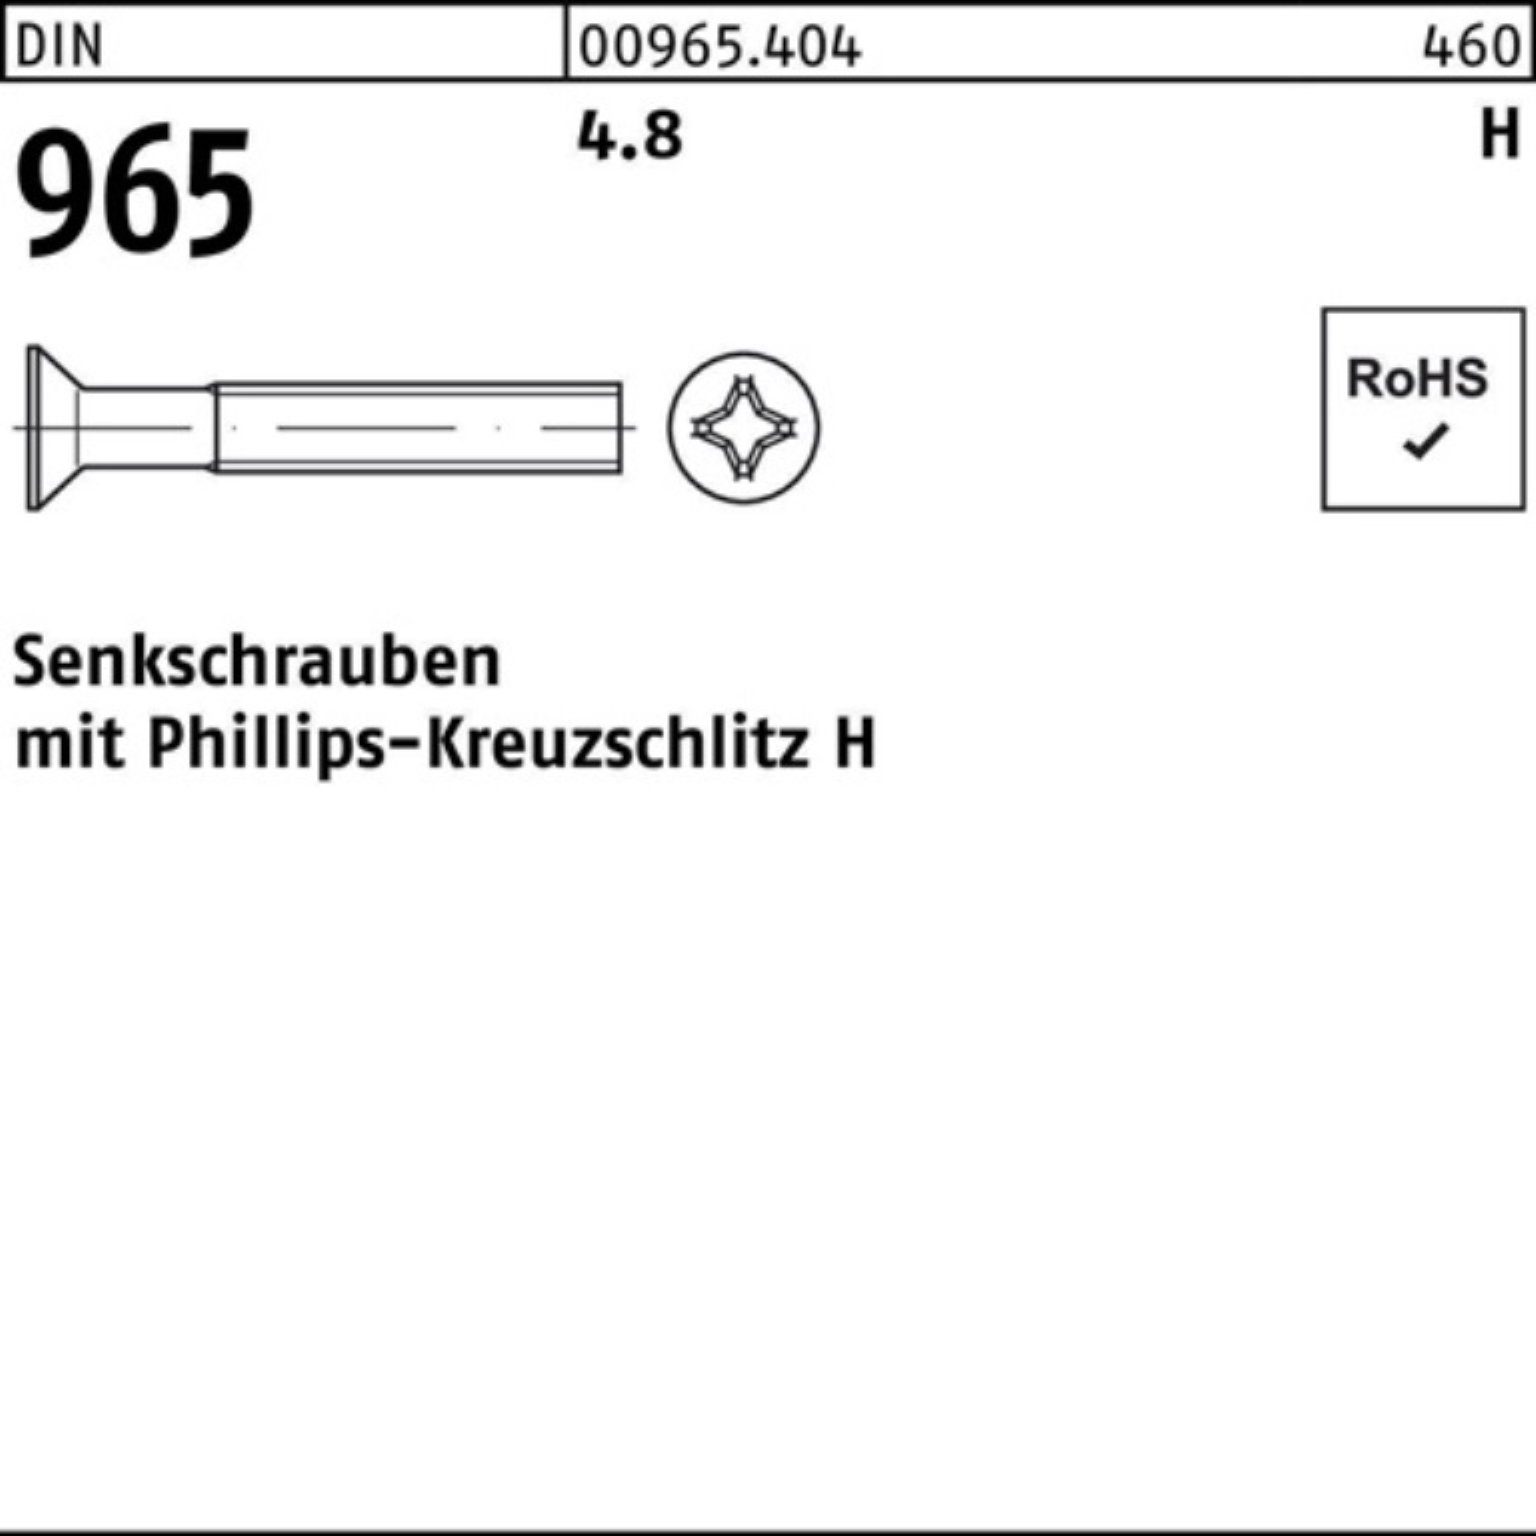 Pack Reyher 2000er Senkschraube 4.8 2000 16-H Senkschraube PH Stück 965 965 DIN 4 DIN M3x